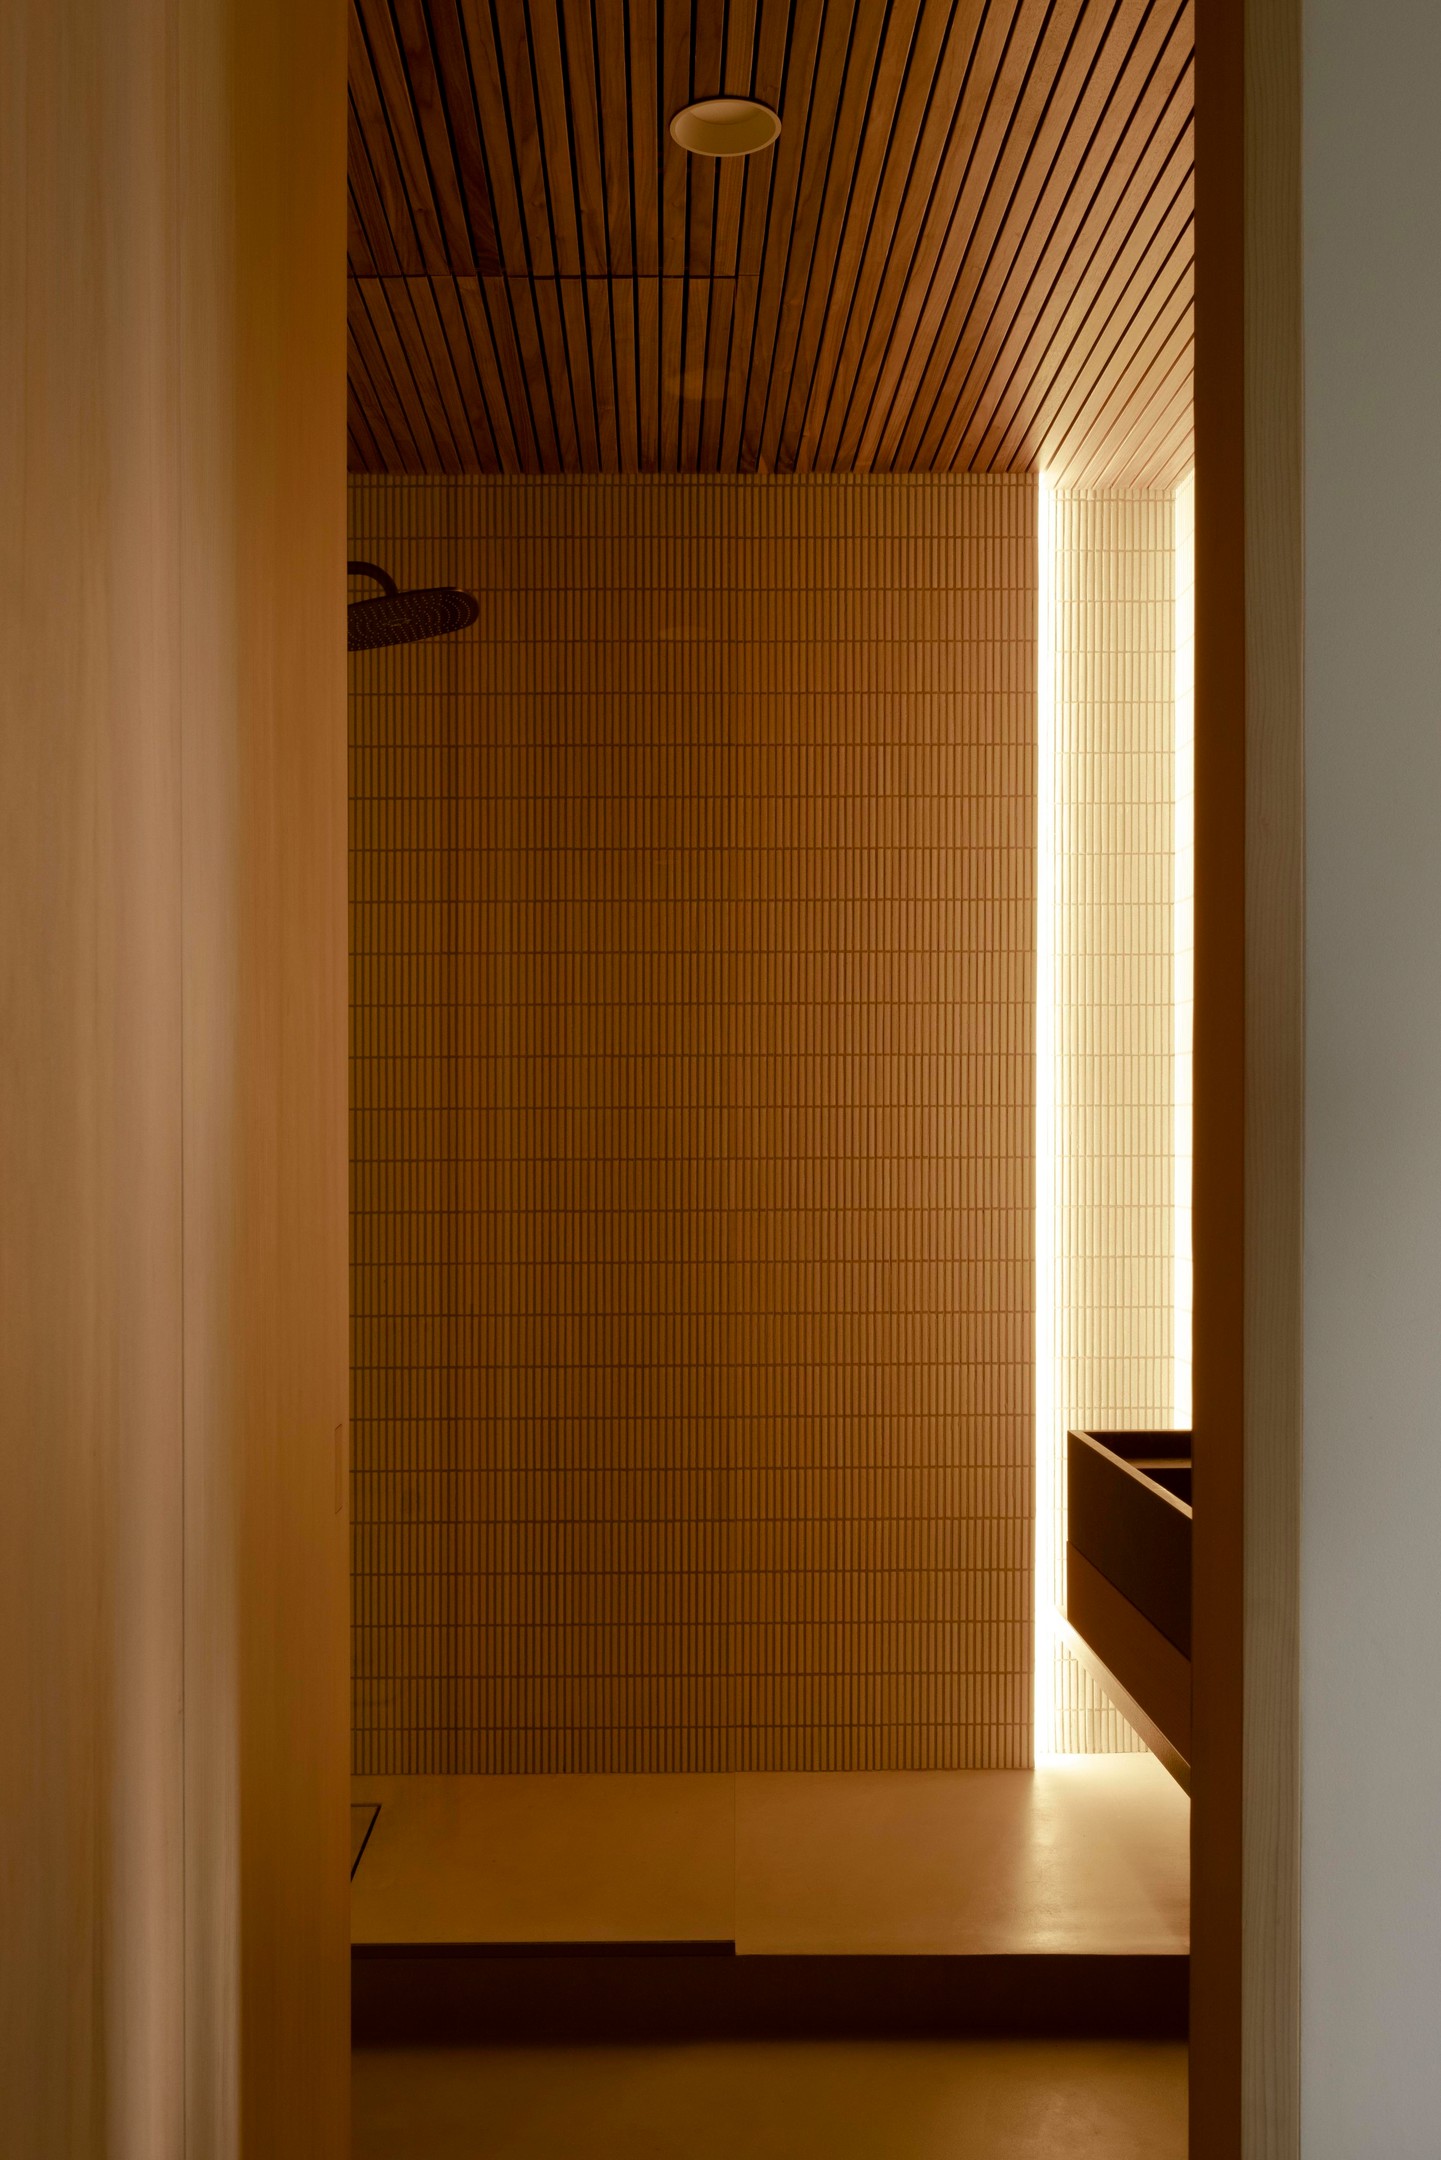 Bên trong, buồng tắm đứng vòi sen được phân vùng với nhà vệ sinh bằng vách ngăn kính trong suốt. Trần nhà ốp những thanh lam gỗ xuyên suốt từ hành lang cho cái nhìn ấm áp.